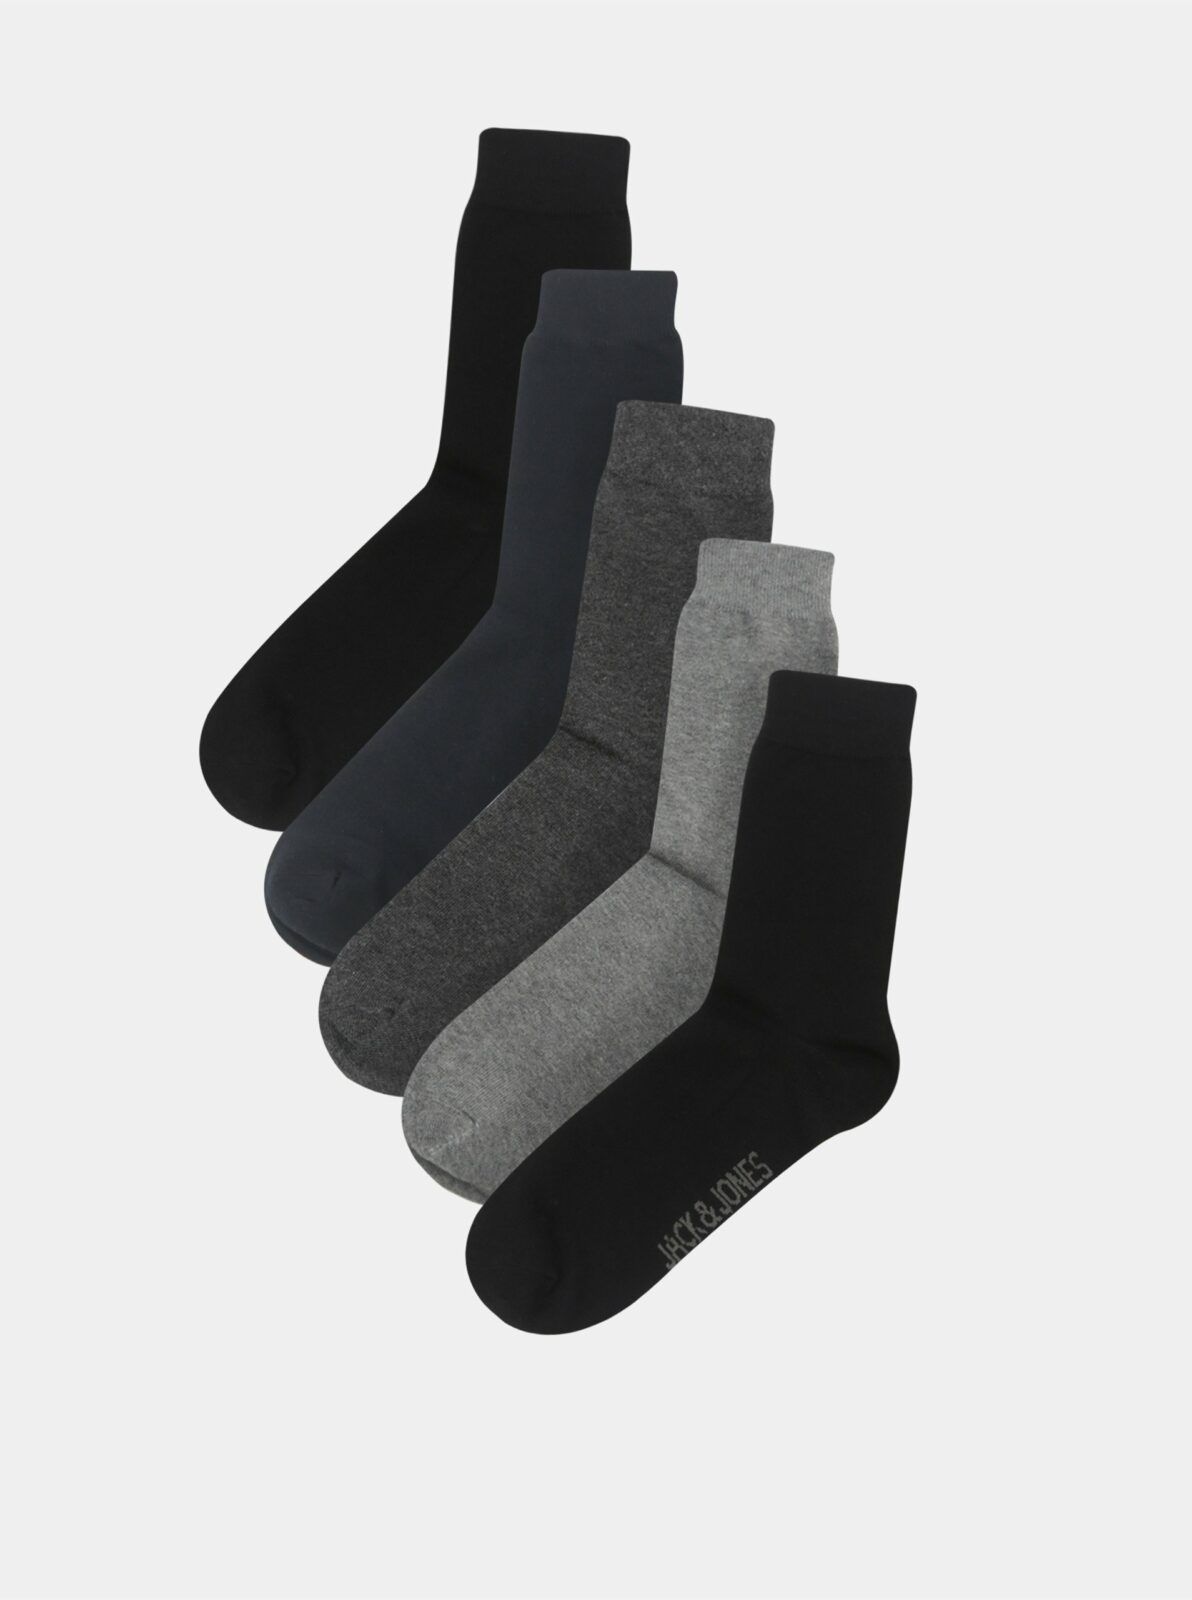 Sada pěti párů pánských ponožek v černé a šedé